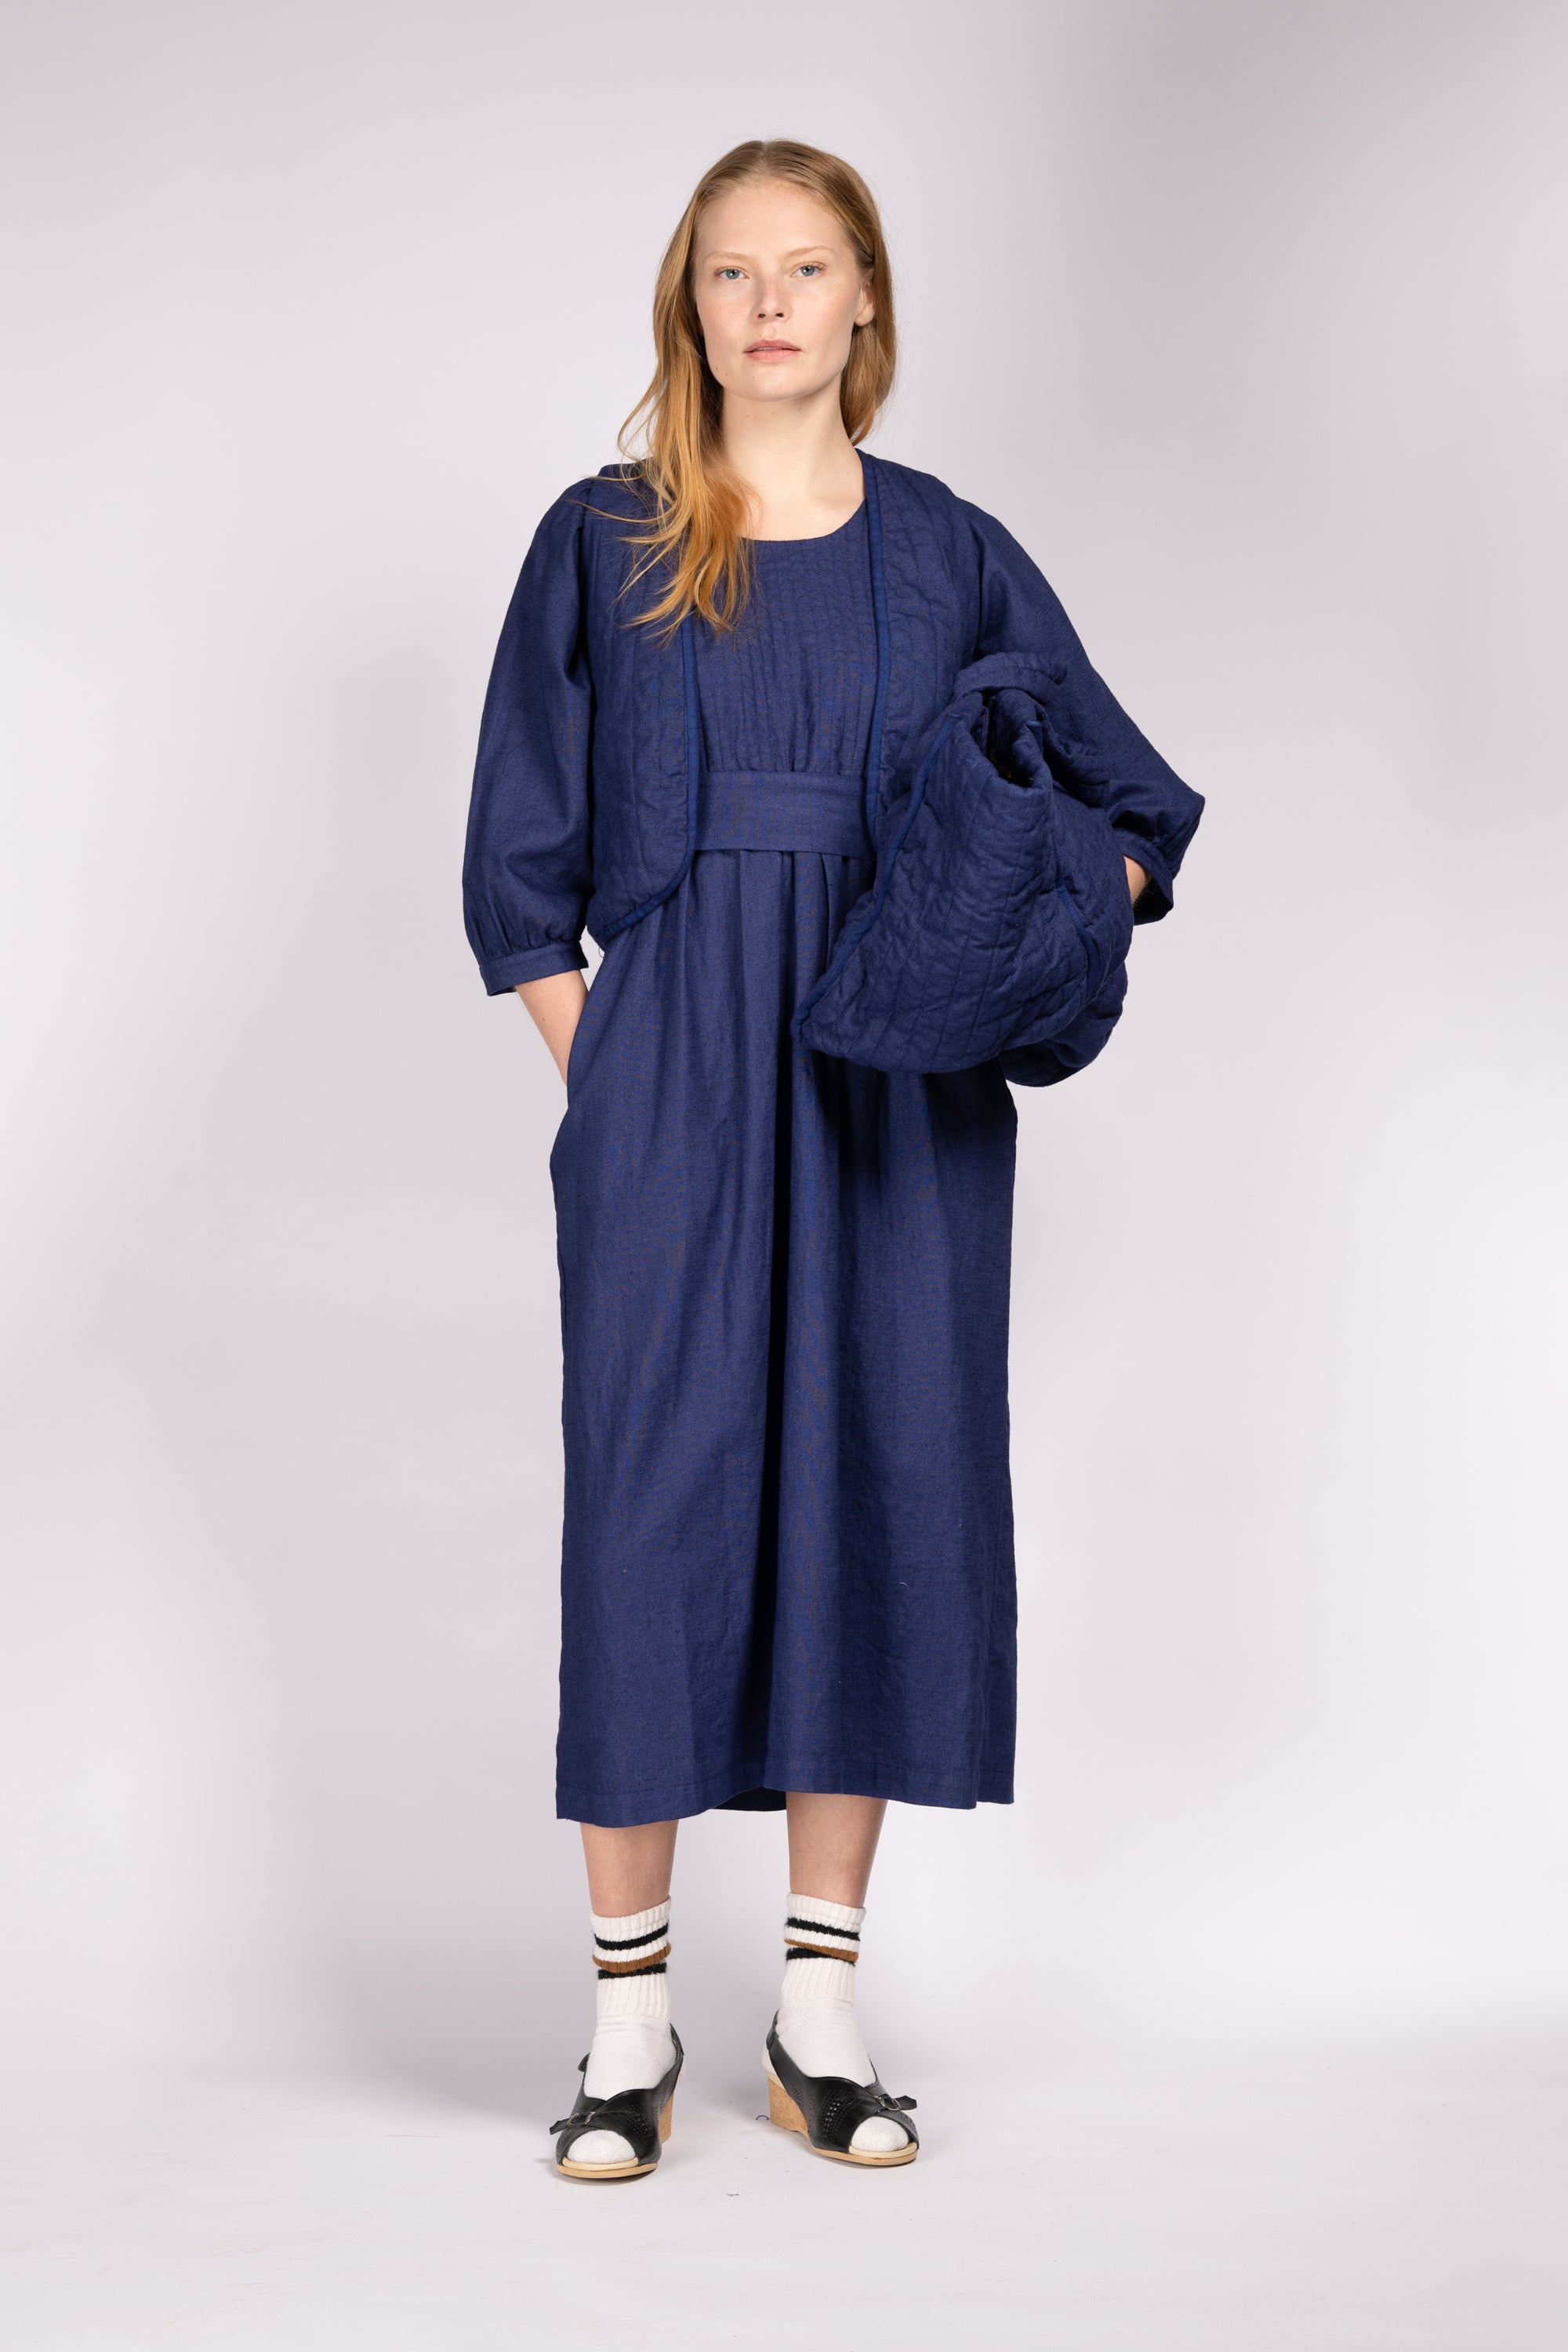 Quilt Dress - French Blue Linen